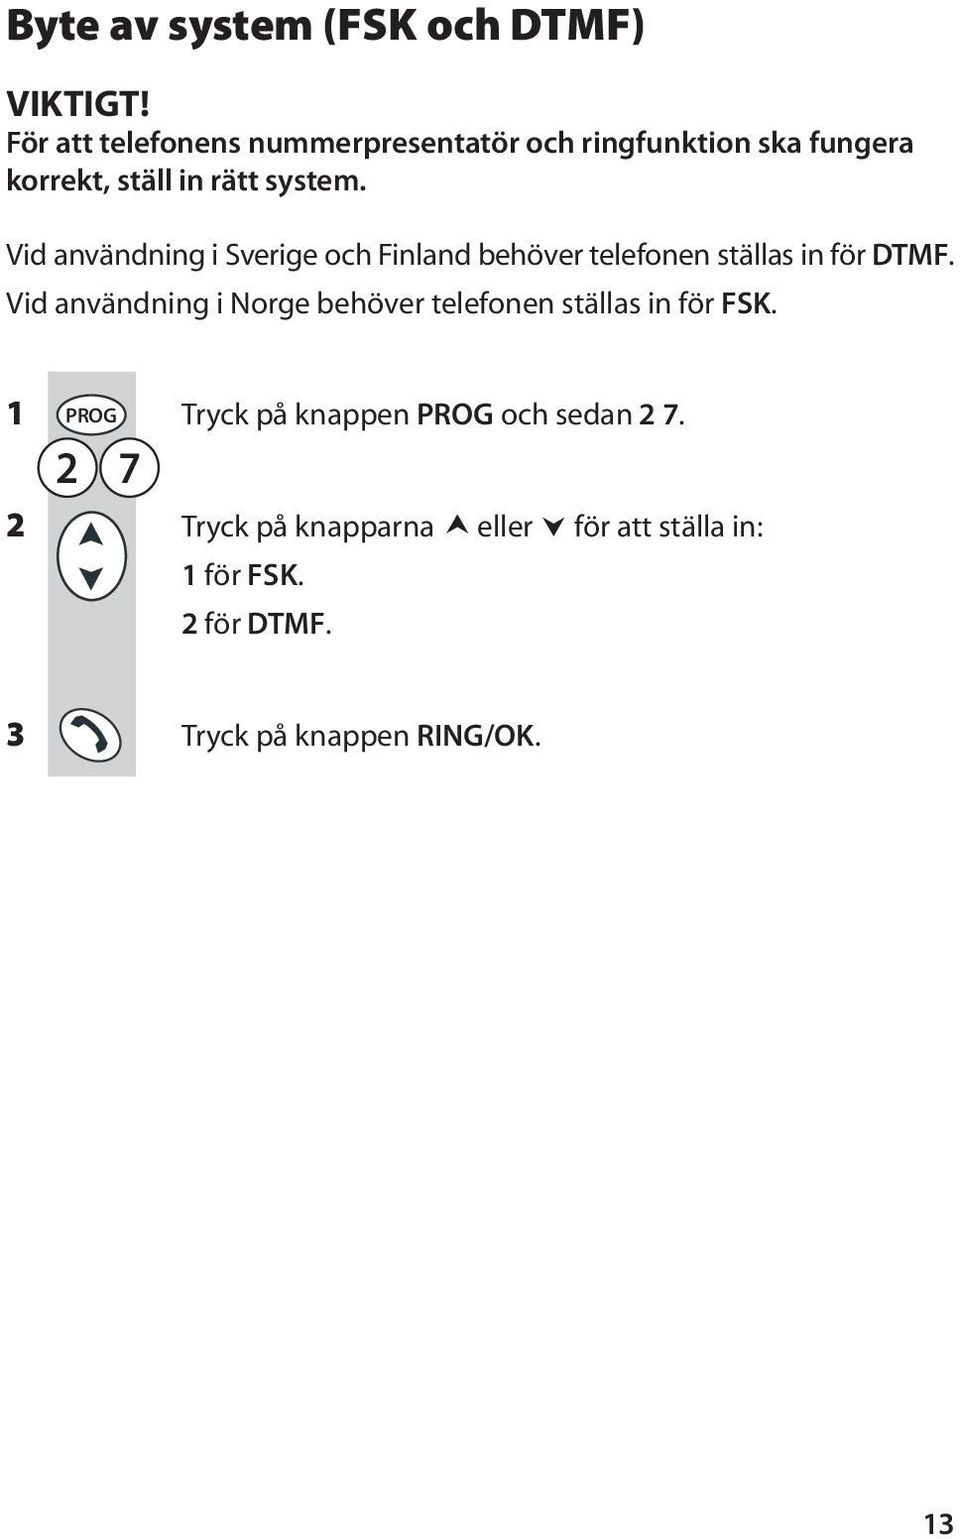 Vid användning i Sverige och Finland behöver telefonen ställas in för DTMF.